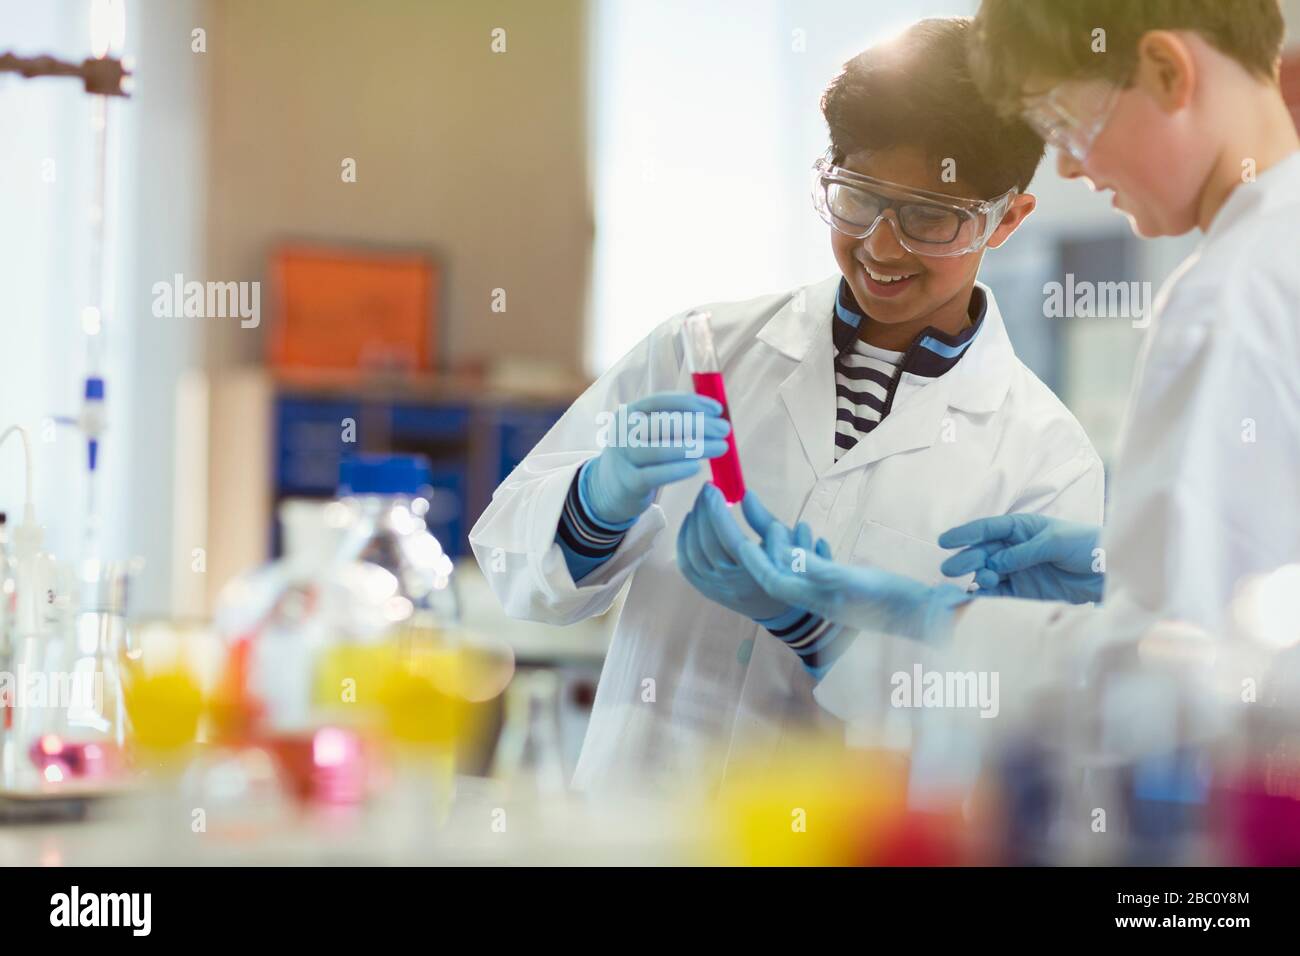 Les élèves de garçon qui effectuent des expériences scientifiques, examinent le liquide dans le tube à essai en salle de classe de laboratoire Banque D'Images